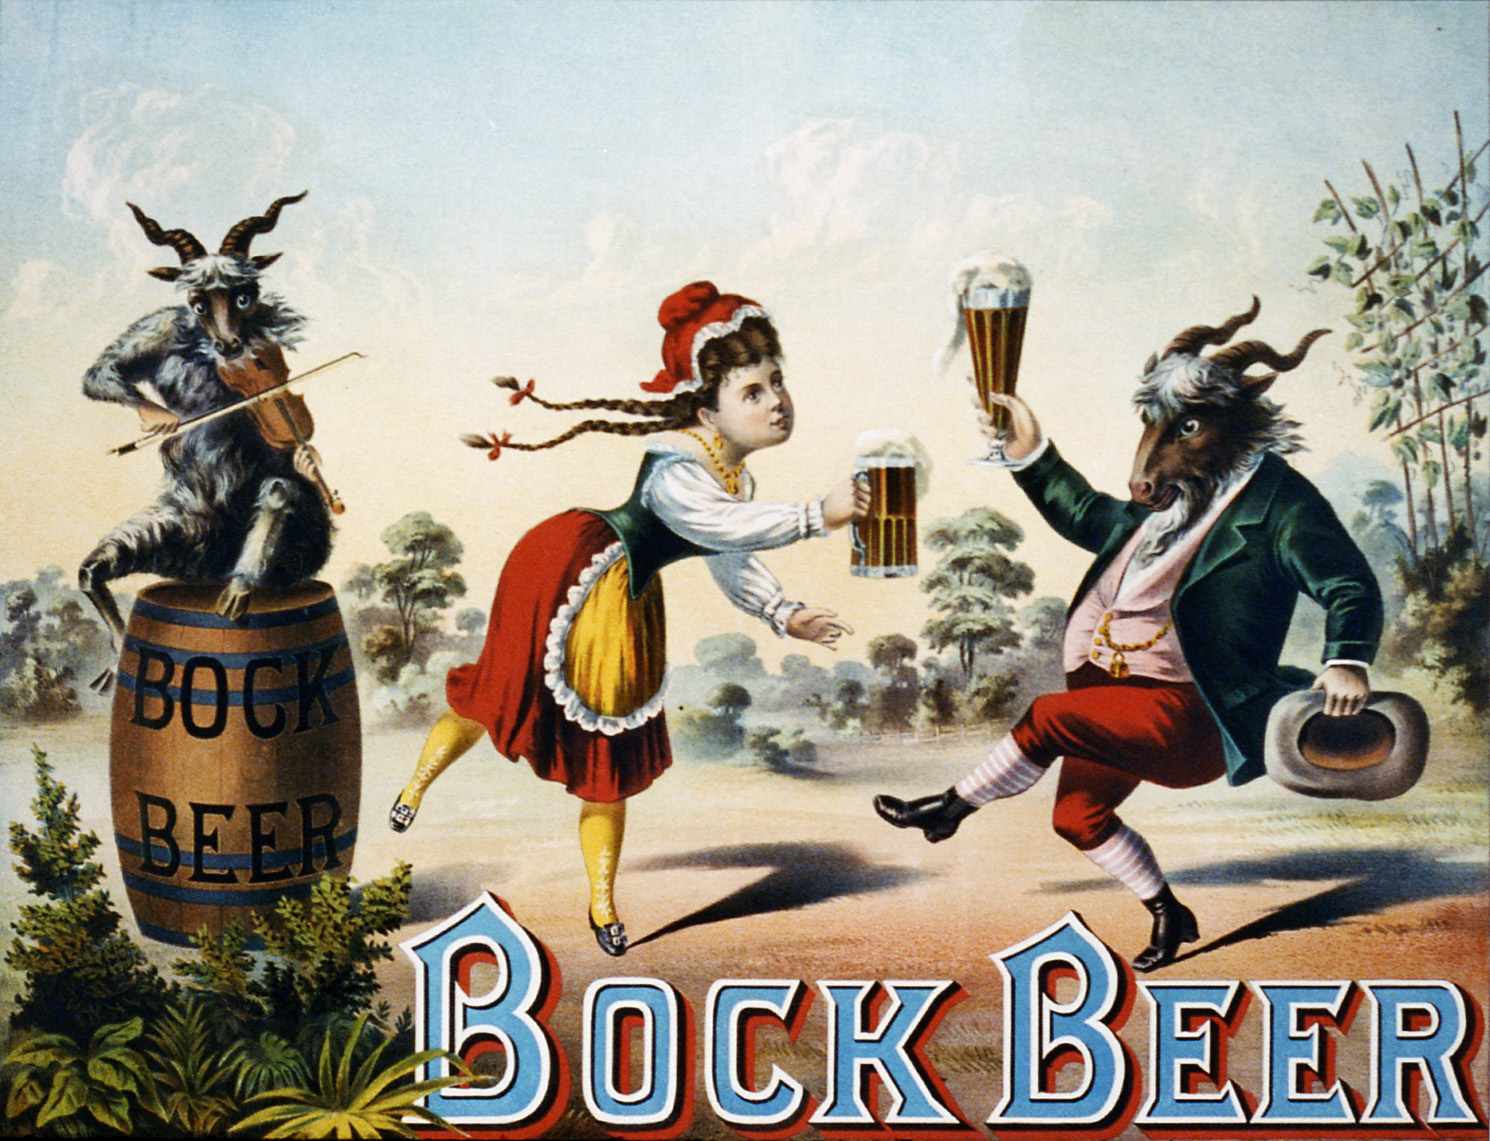 bock_beer_advertising_1882.jpg